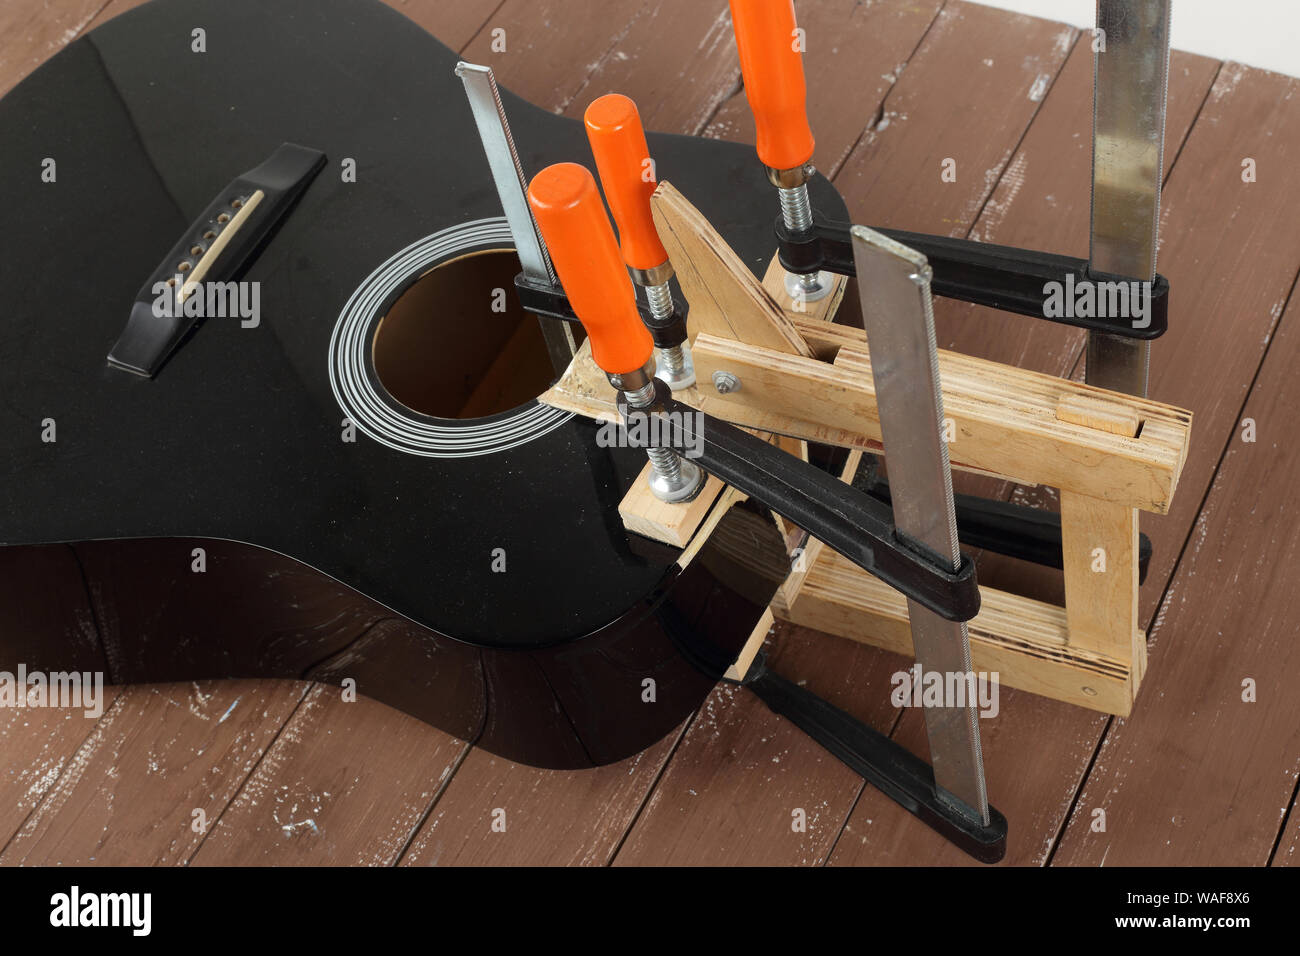 Service de réparation de guitares et de serrage - Réparation de la carte son de guitare acoustique cassé fond de bois Banque D'Images